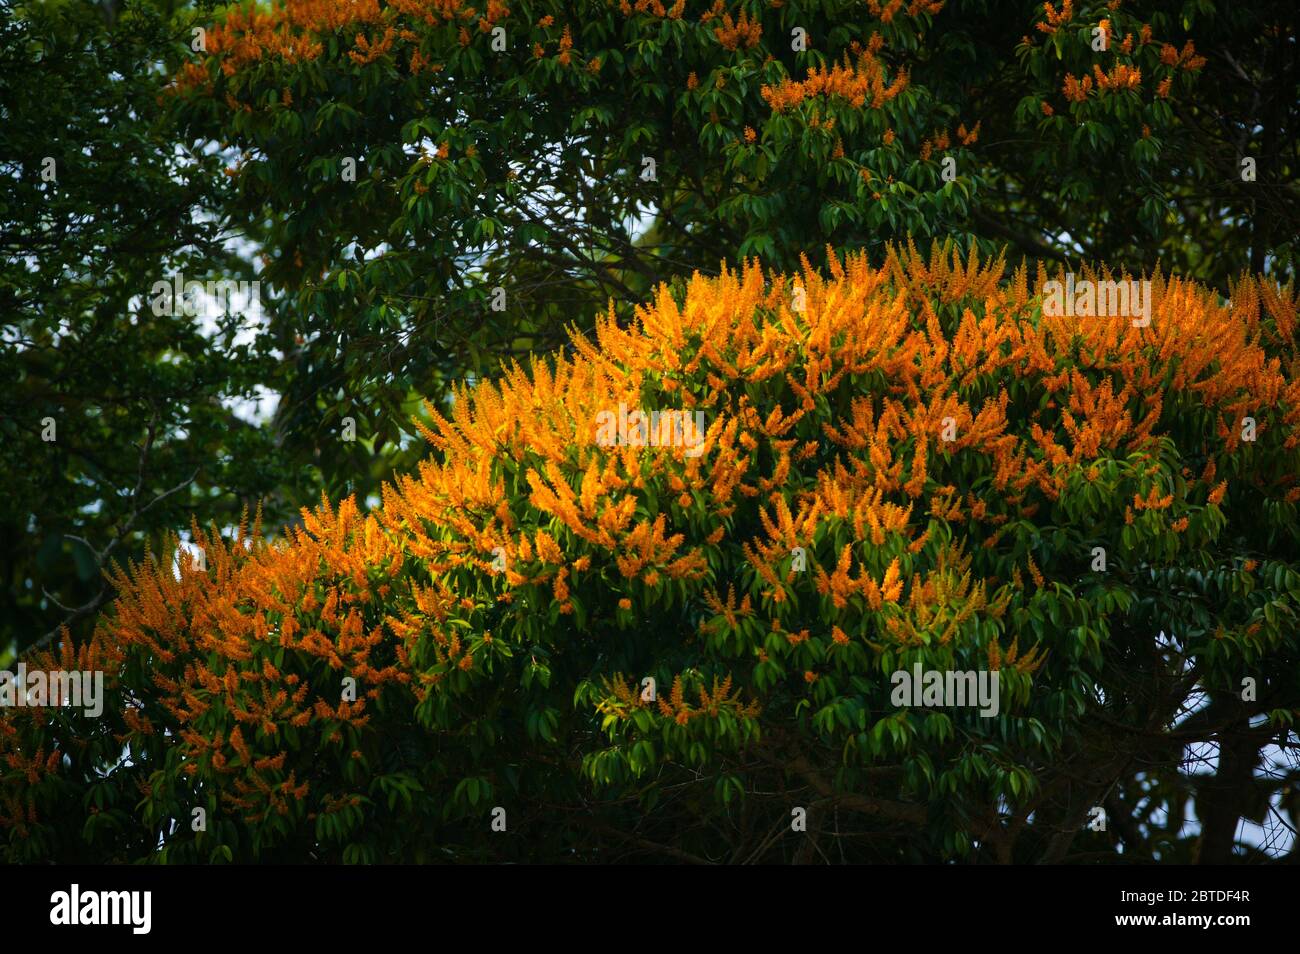 Florece el árbol de mayo, Vochysia ferruginea, en la exuberante selva del parque nacional de Soberania, provincia de Colón, República de Panamá. Foto de stock